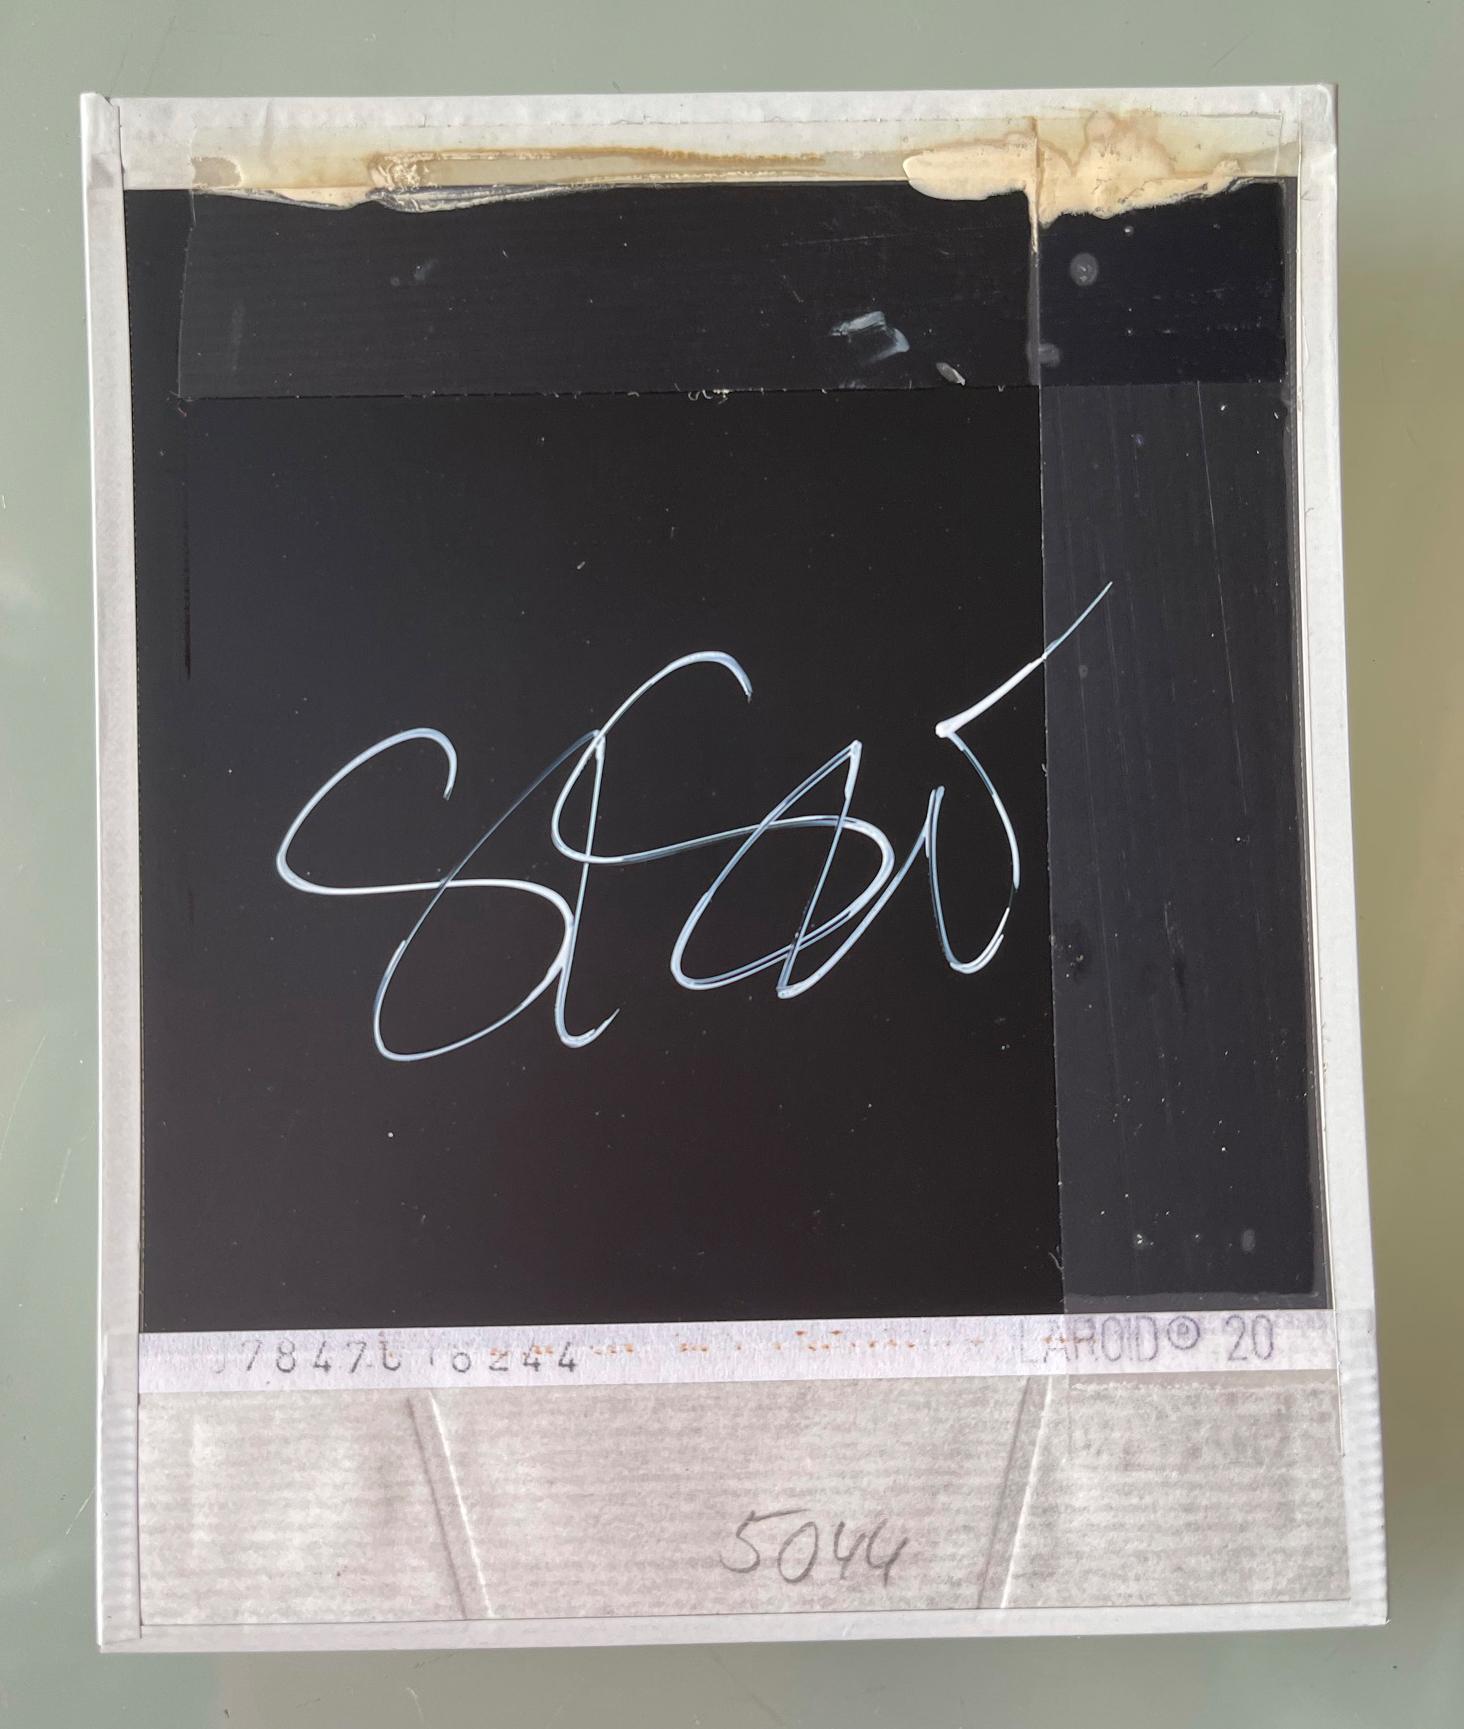 Sam (Stay) with Ewan McGregor - Original Polaroid Unique Piece - Photograph by Stefanie Schneider